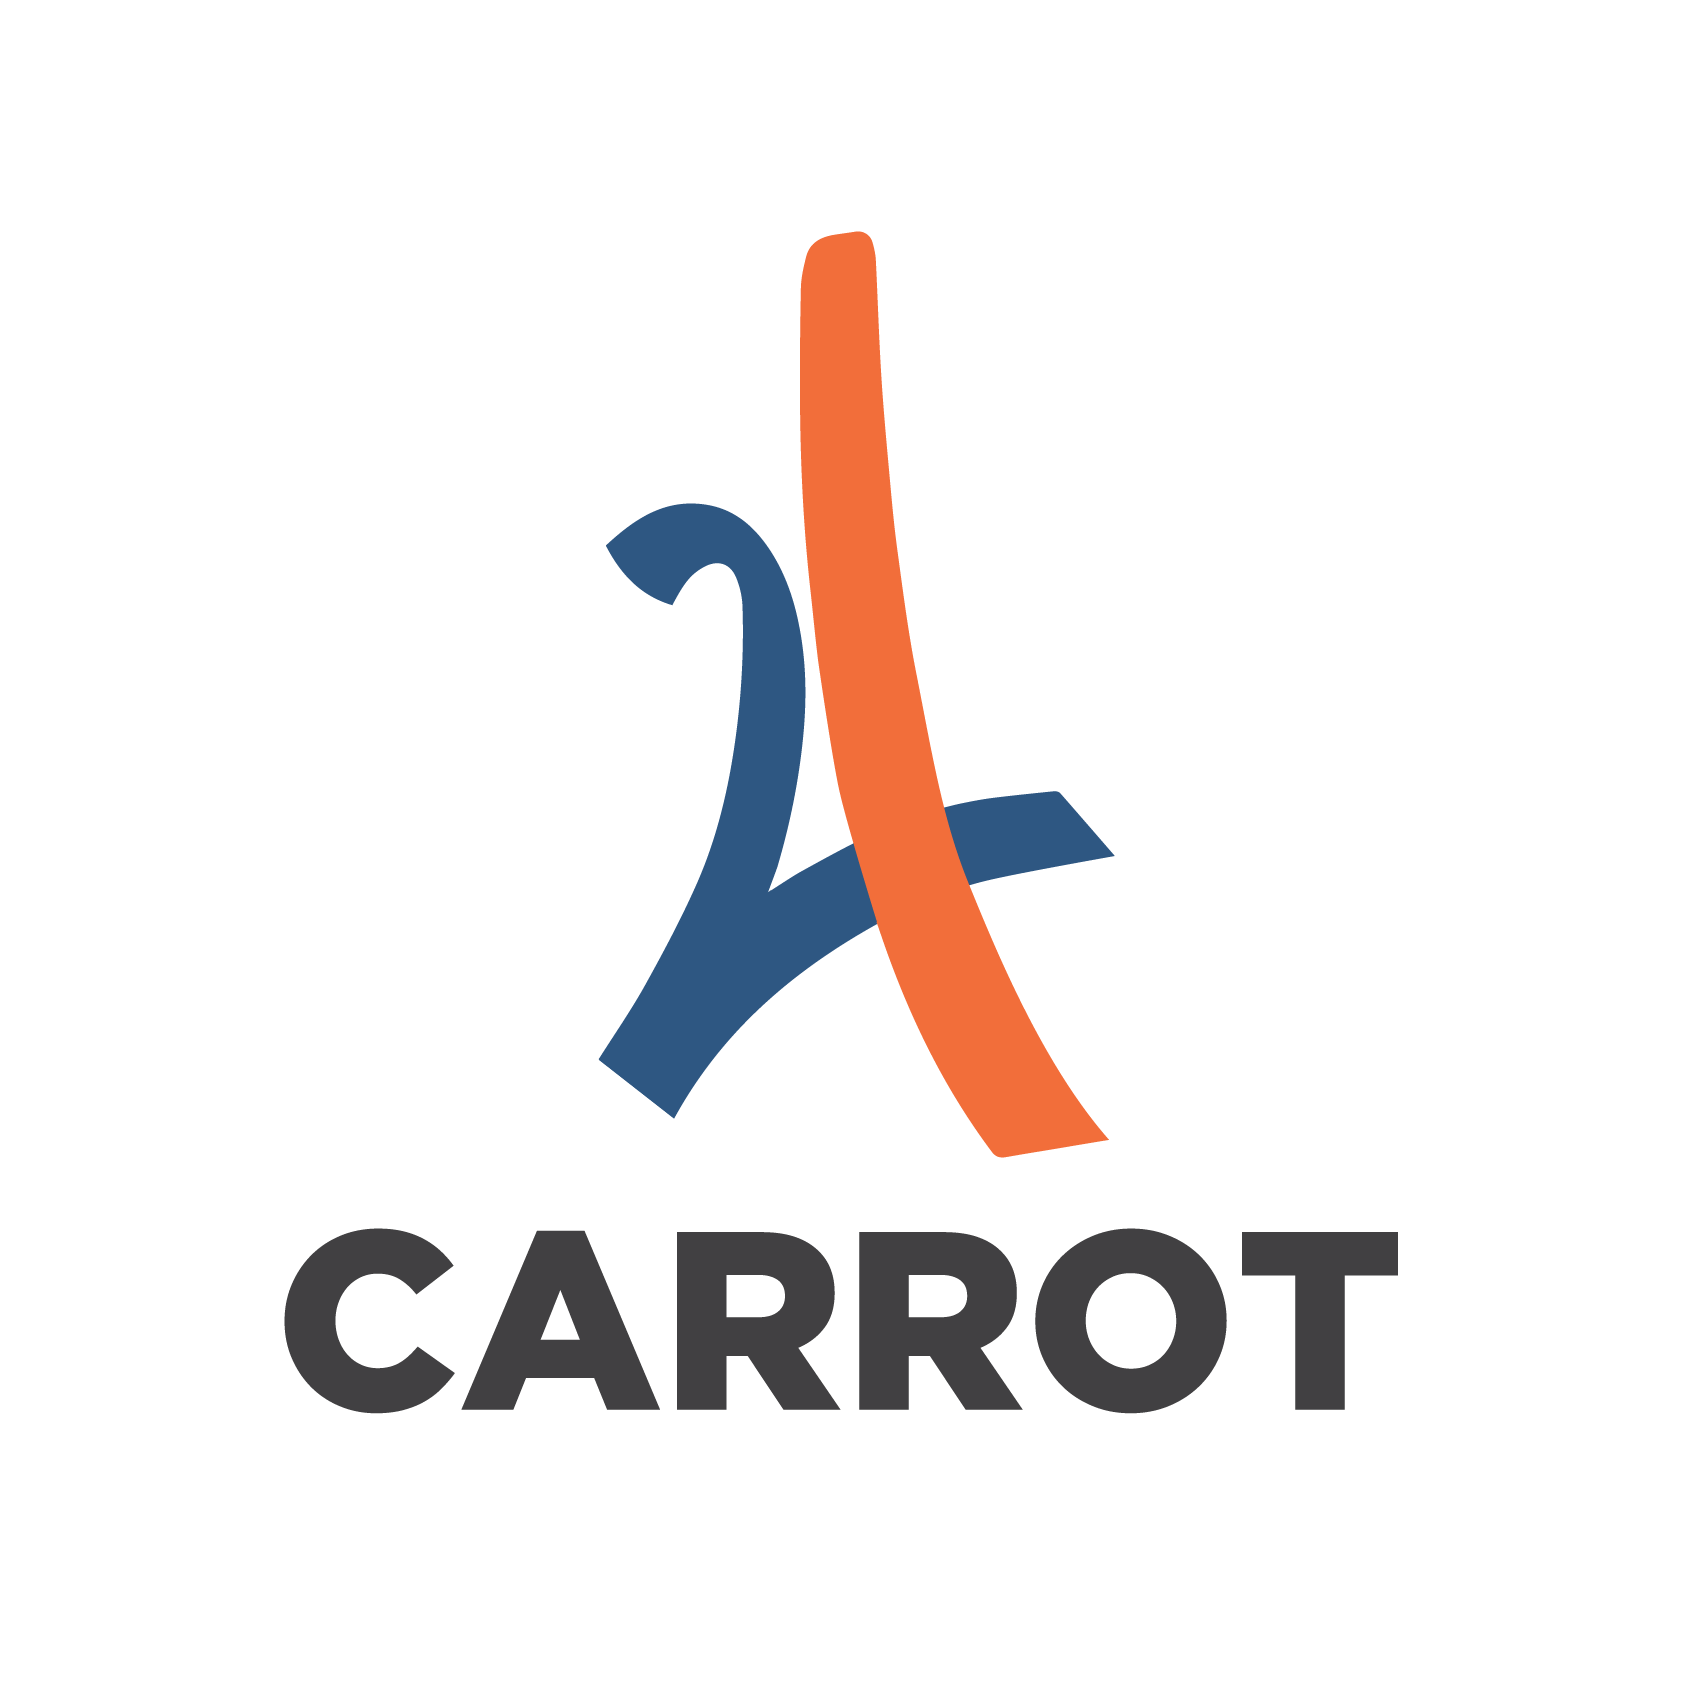 24 Carrot